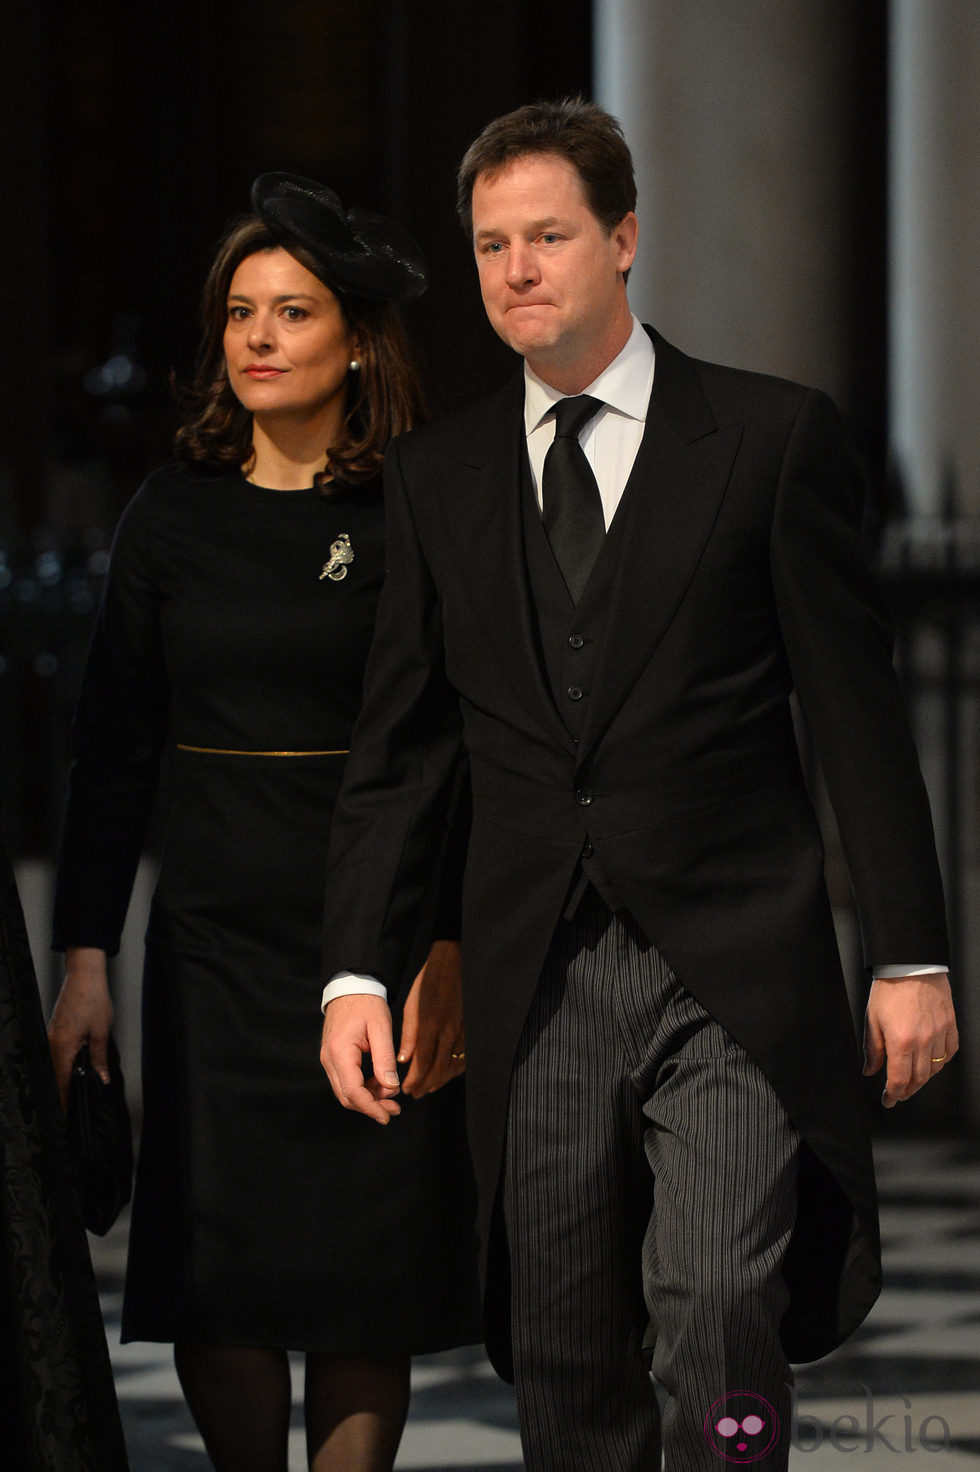 Nick Clegg y Miriam González en el funeral de Margaret Thatcher